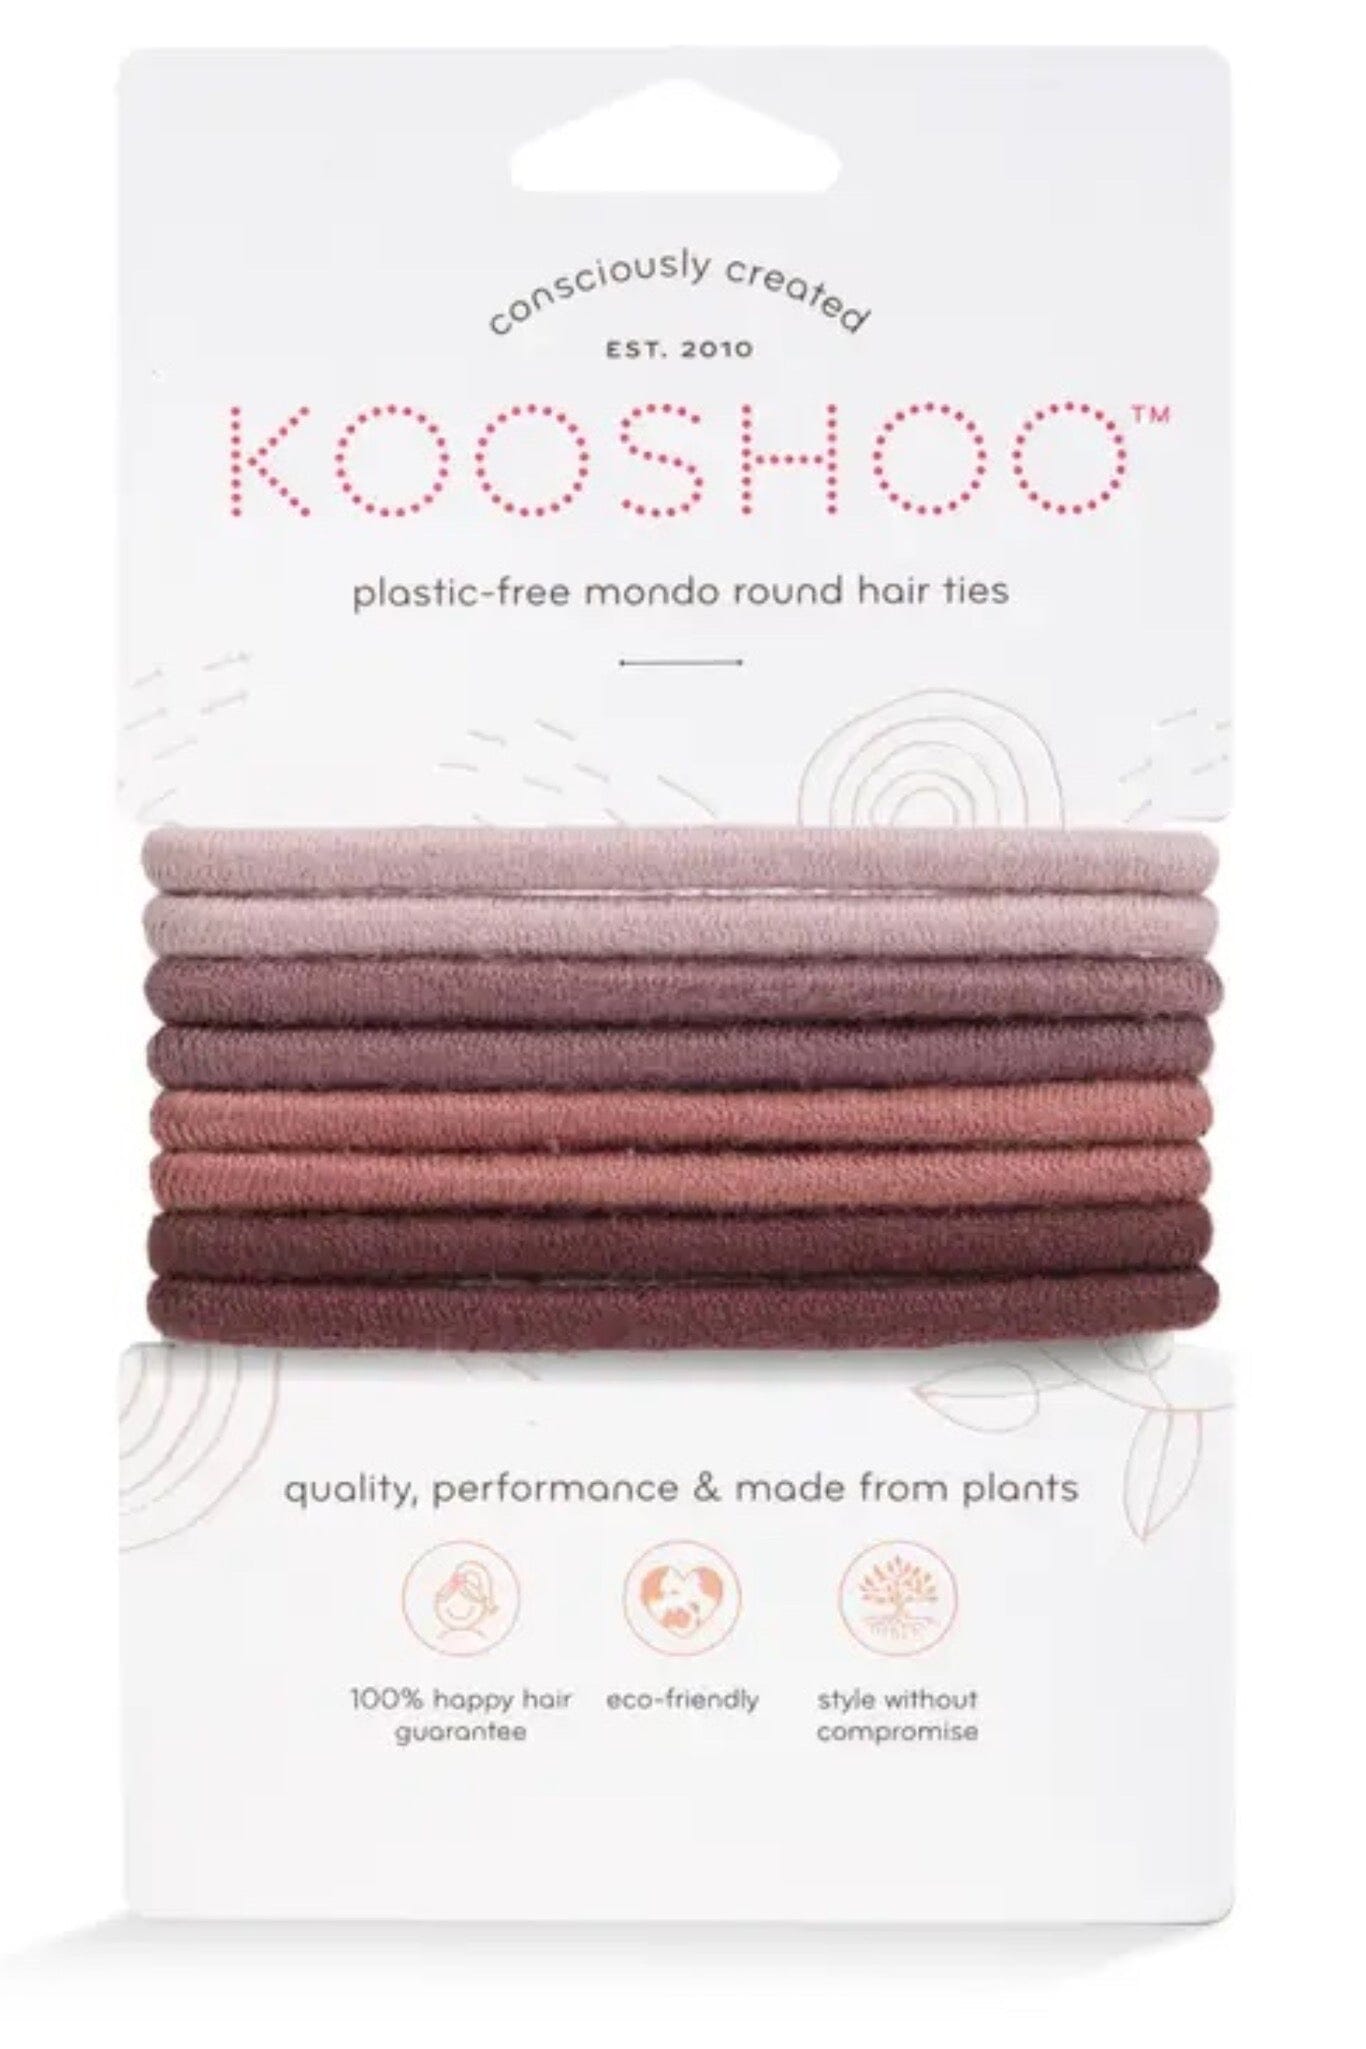 Kooshoo Organic Round Hair Ties - Earth